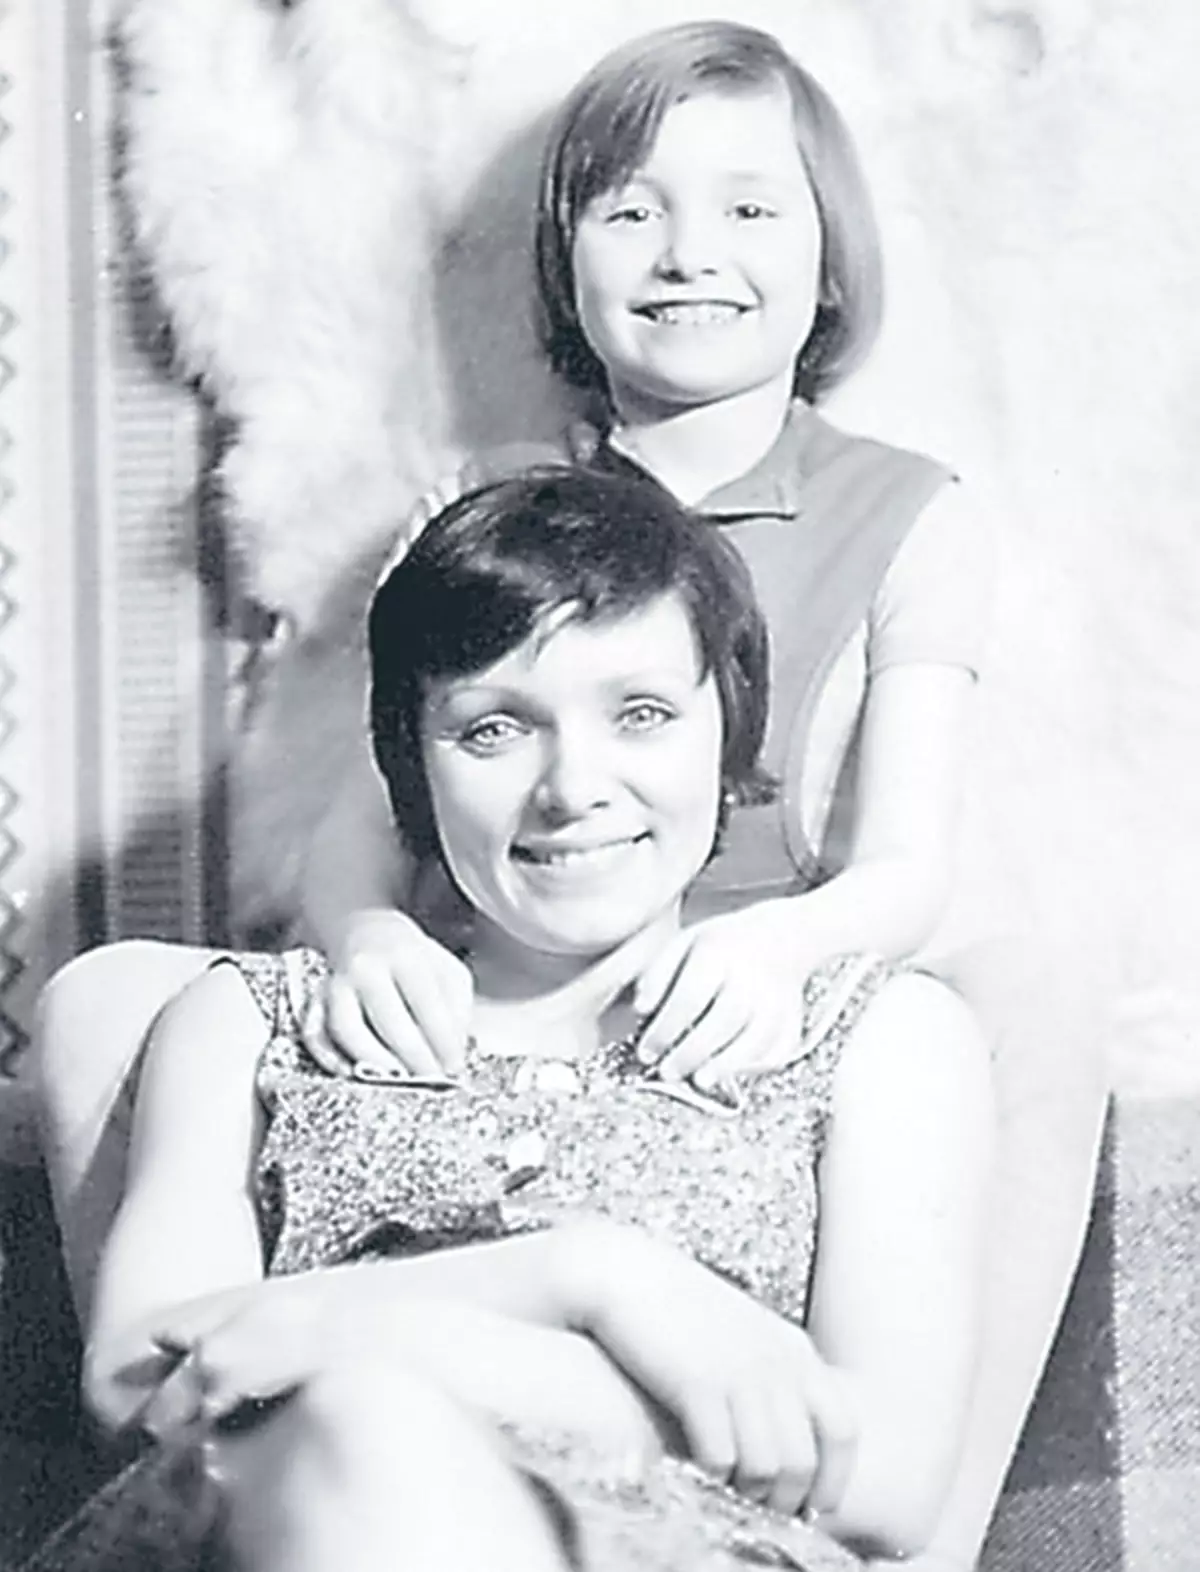 Diana nació en la familia de los periodistas. En la foto: Future Rock Star con su madre.